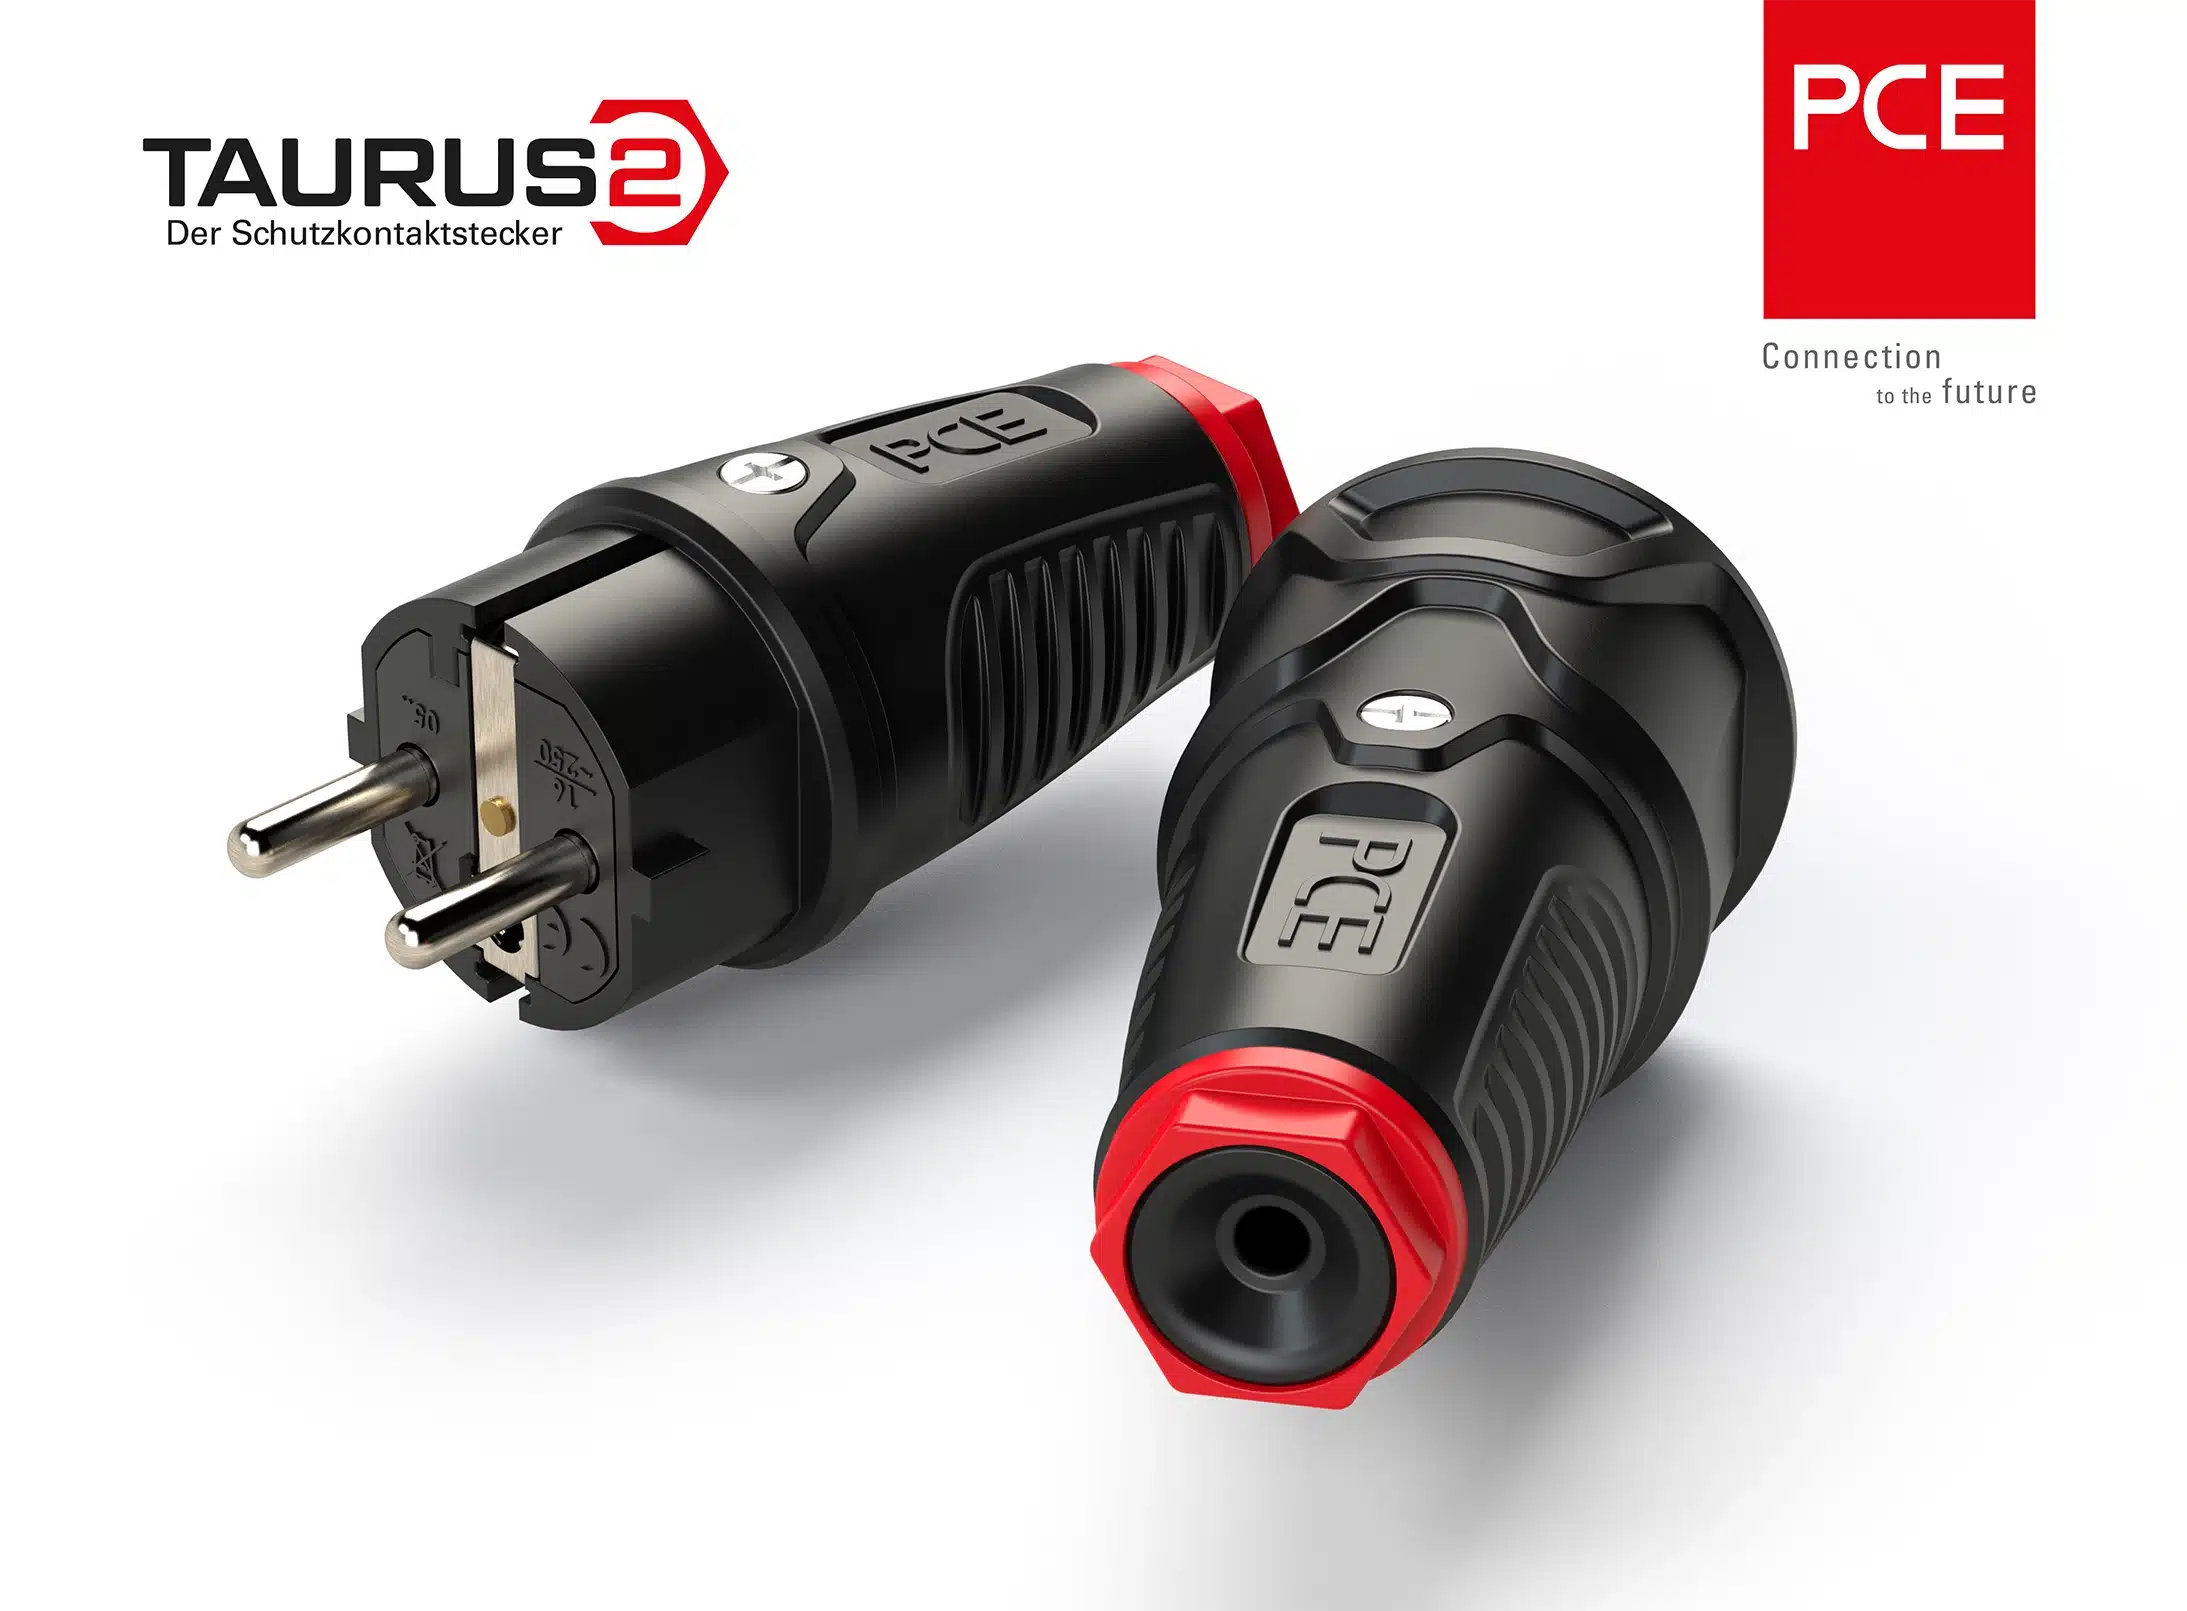 Rendering von Taurus2 Stecker mit Kupplung IP20 duo von PC Electric mit SOLIDWORKS Visualize - setzt erfolgreich ein